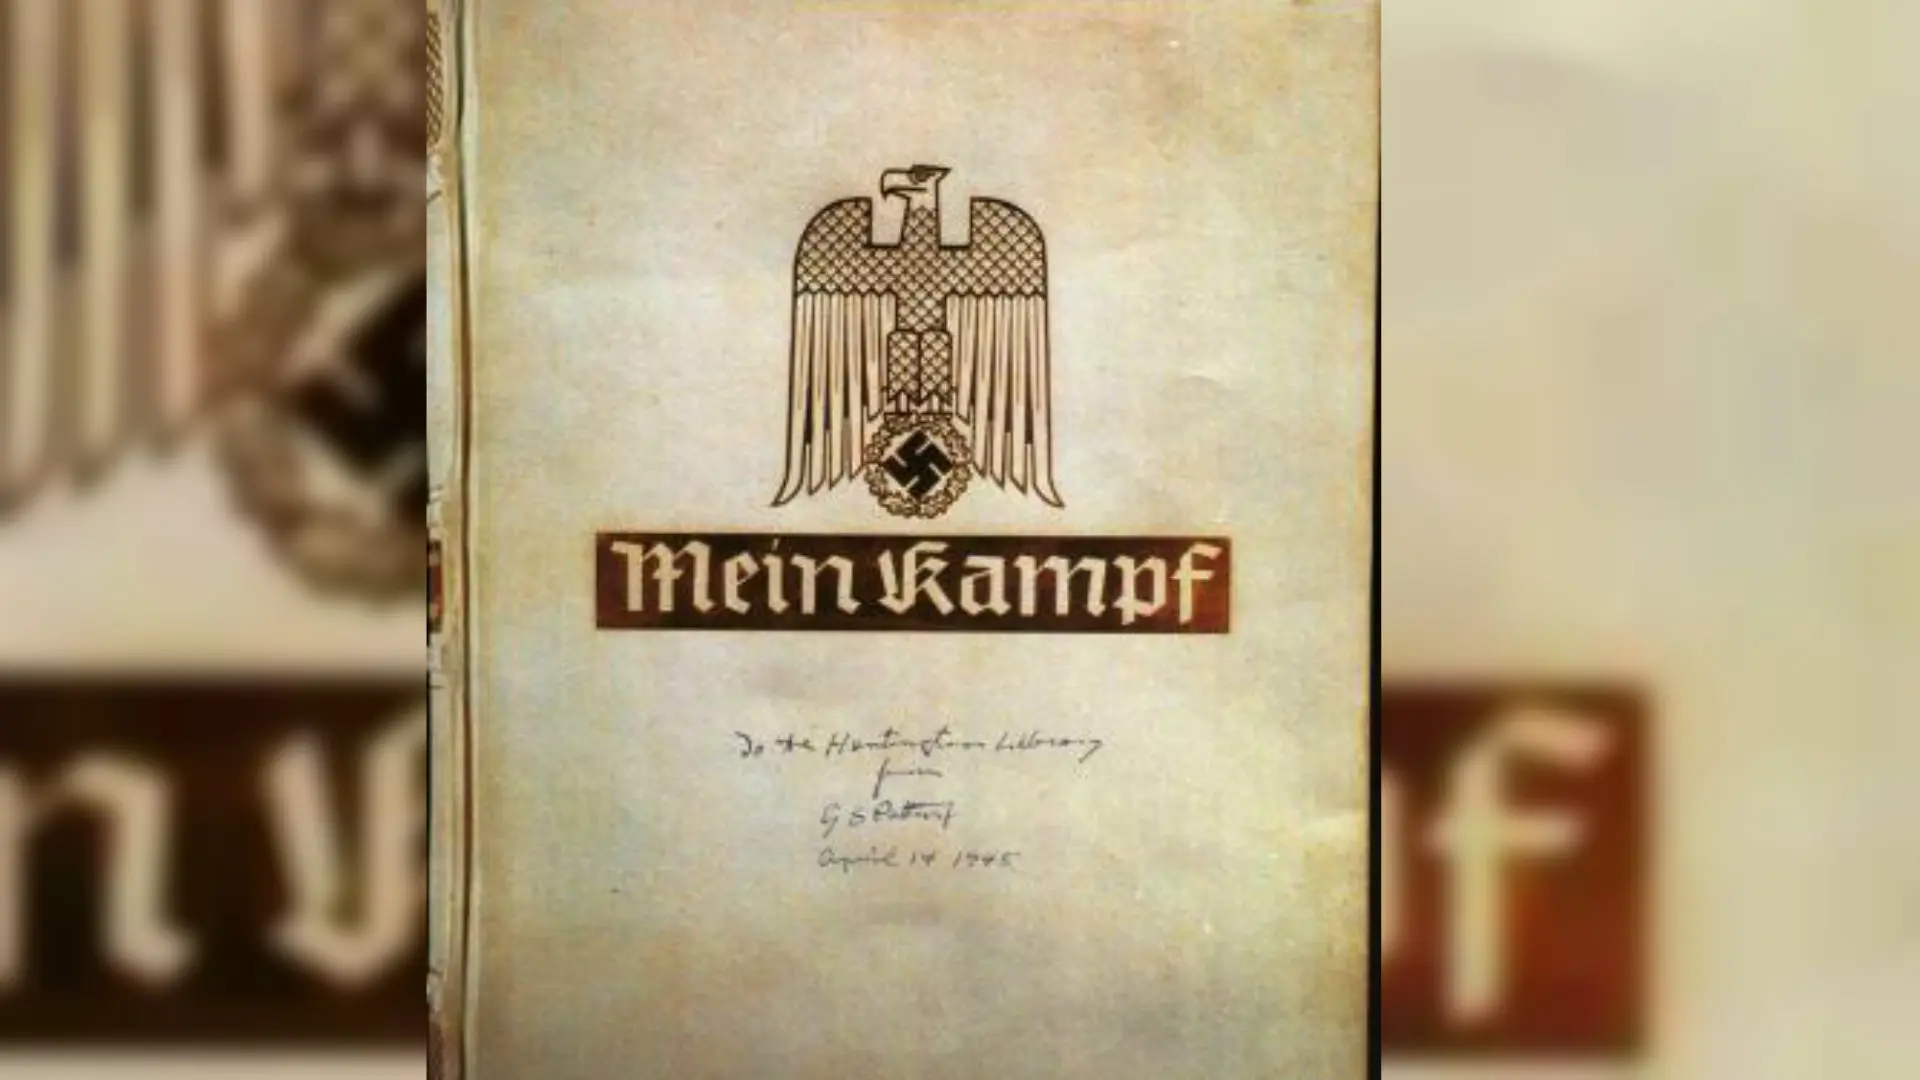 Mein Kampf, buku yang berisi pemikiran ideologis Adolf Hitler, akan diterbitkan ulang di Jerman setelah terlarang selama ini.